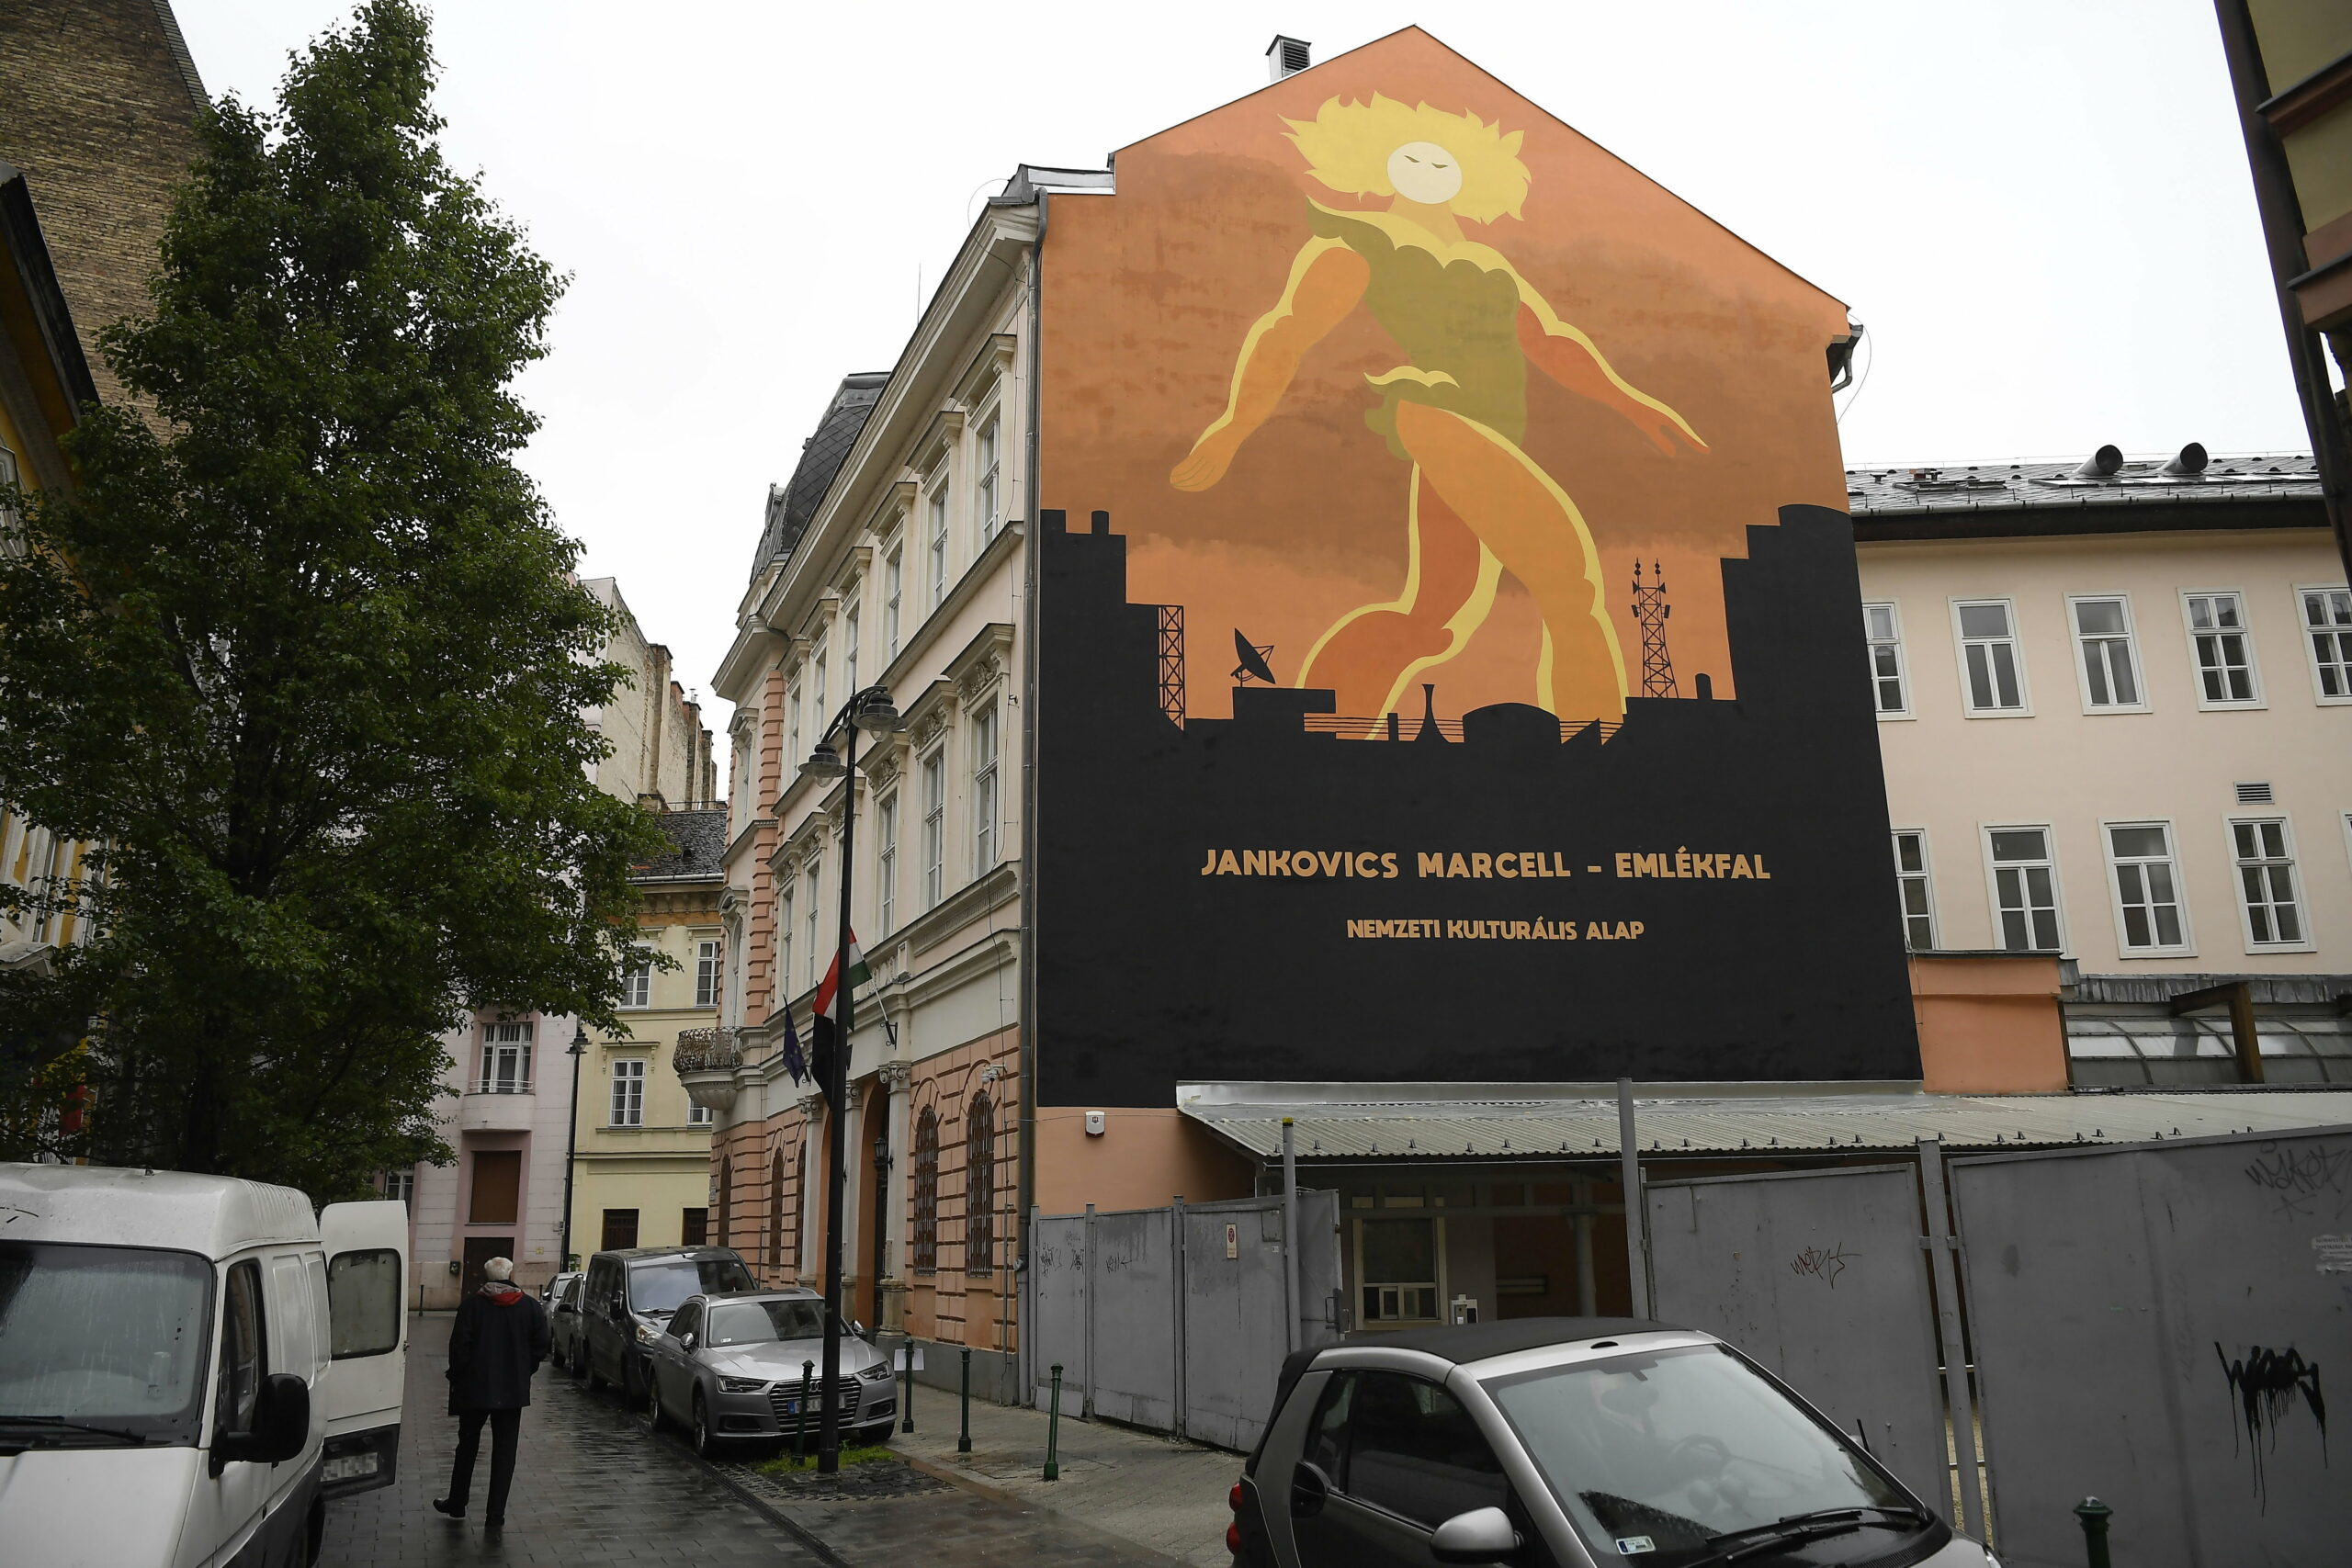 Jankovics Marcellnak állít emléket egy tűzfalfestmény az NKA székházán